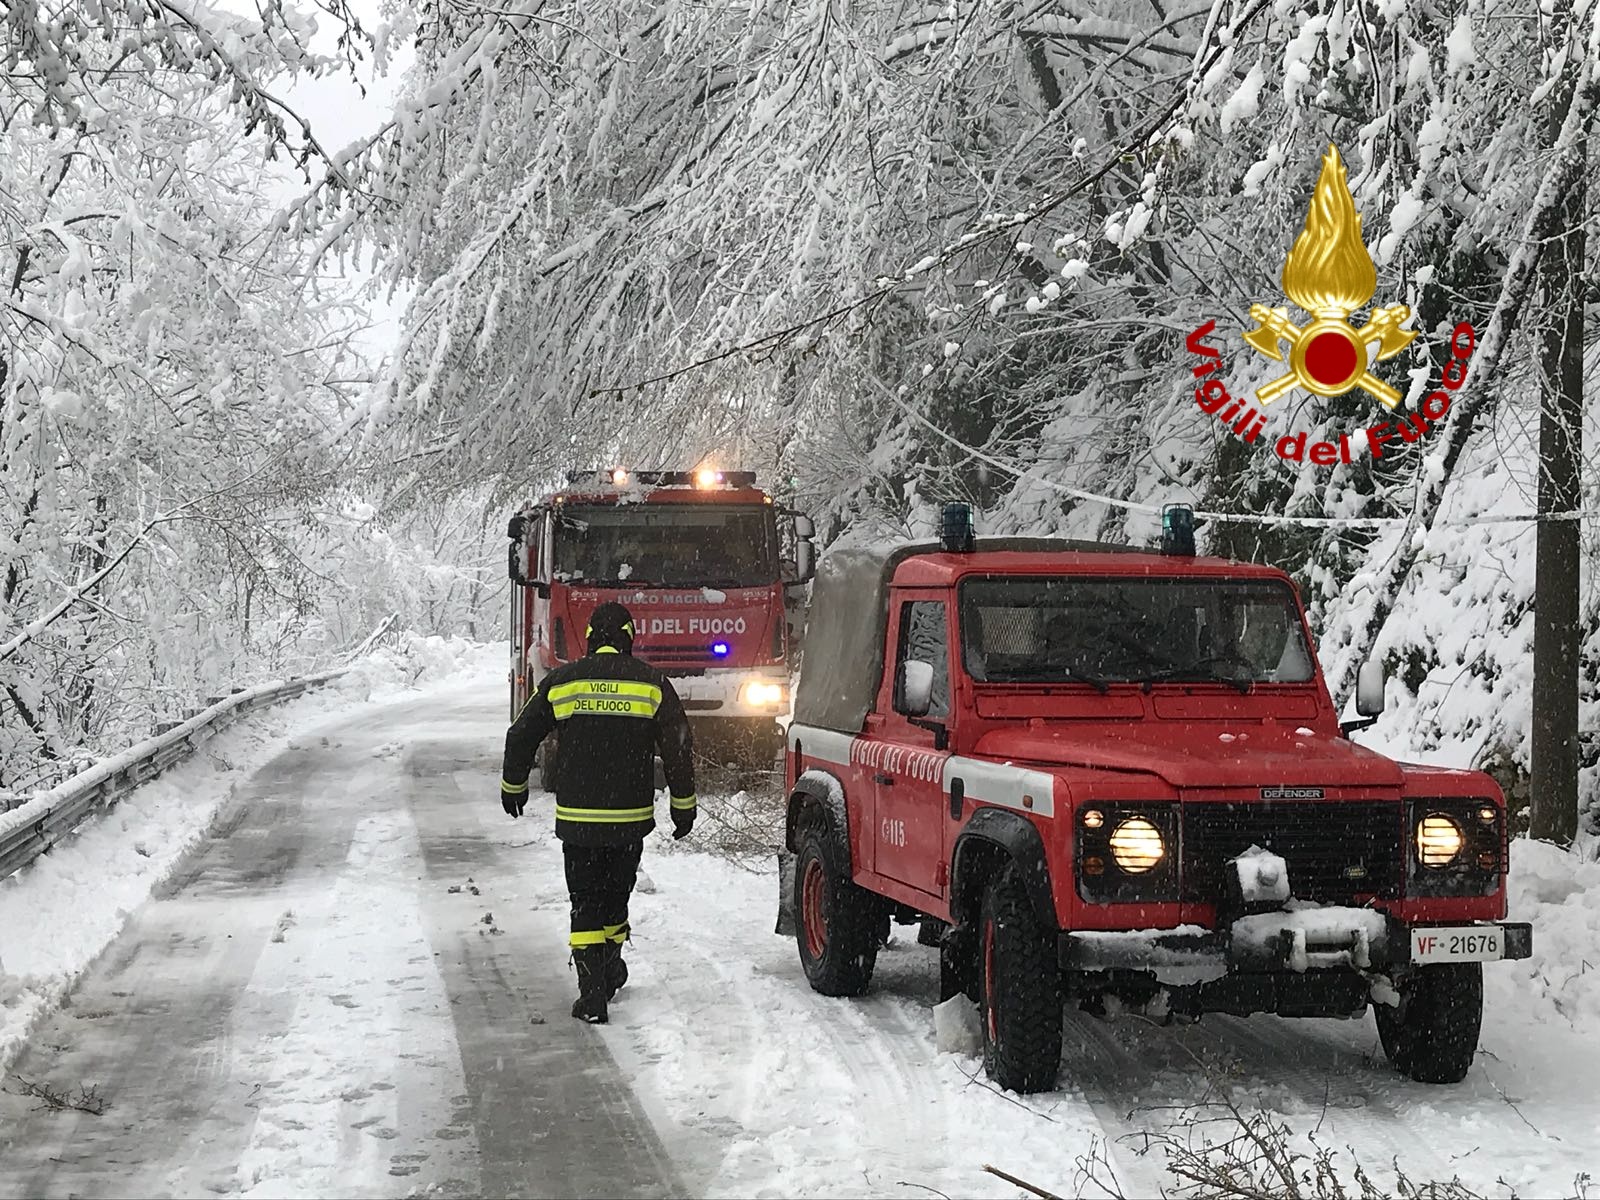 Campania|Allerta meteo, Protezione civile: dal 3 rischio gelo e neve anche in pianura